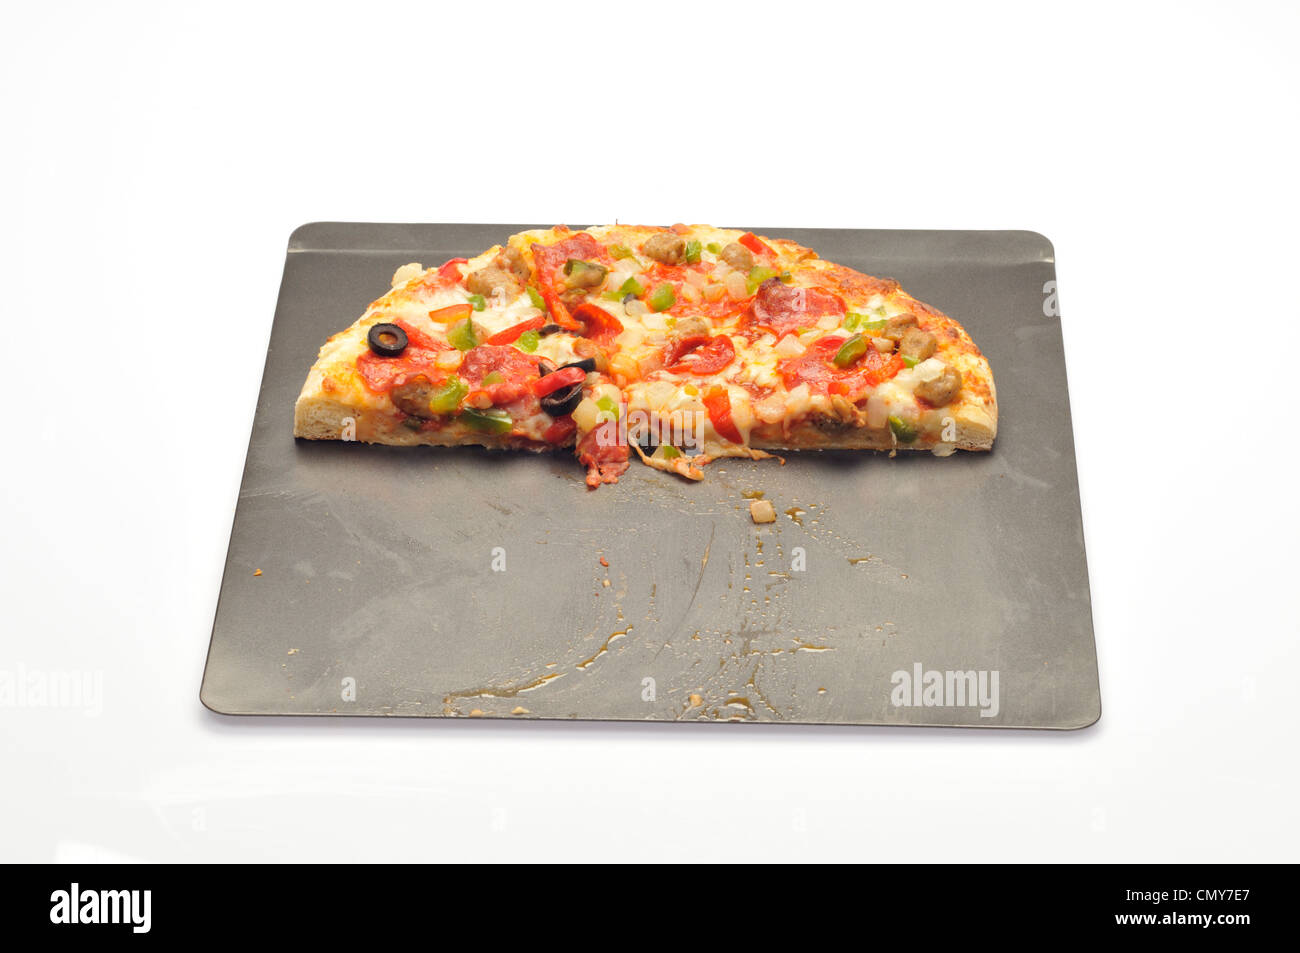 Caricata la pizza sulla teglia con salsiccia, salsiccia per pizza, verde e rosso e peperoni, cipolle e olive nere Foto Stock